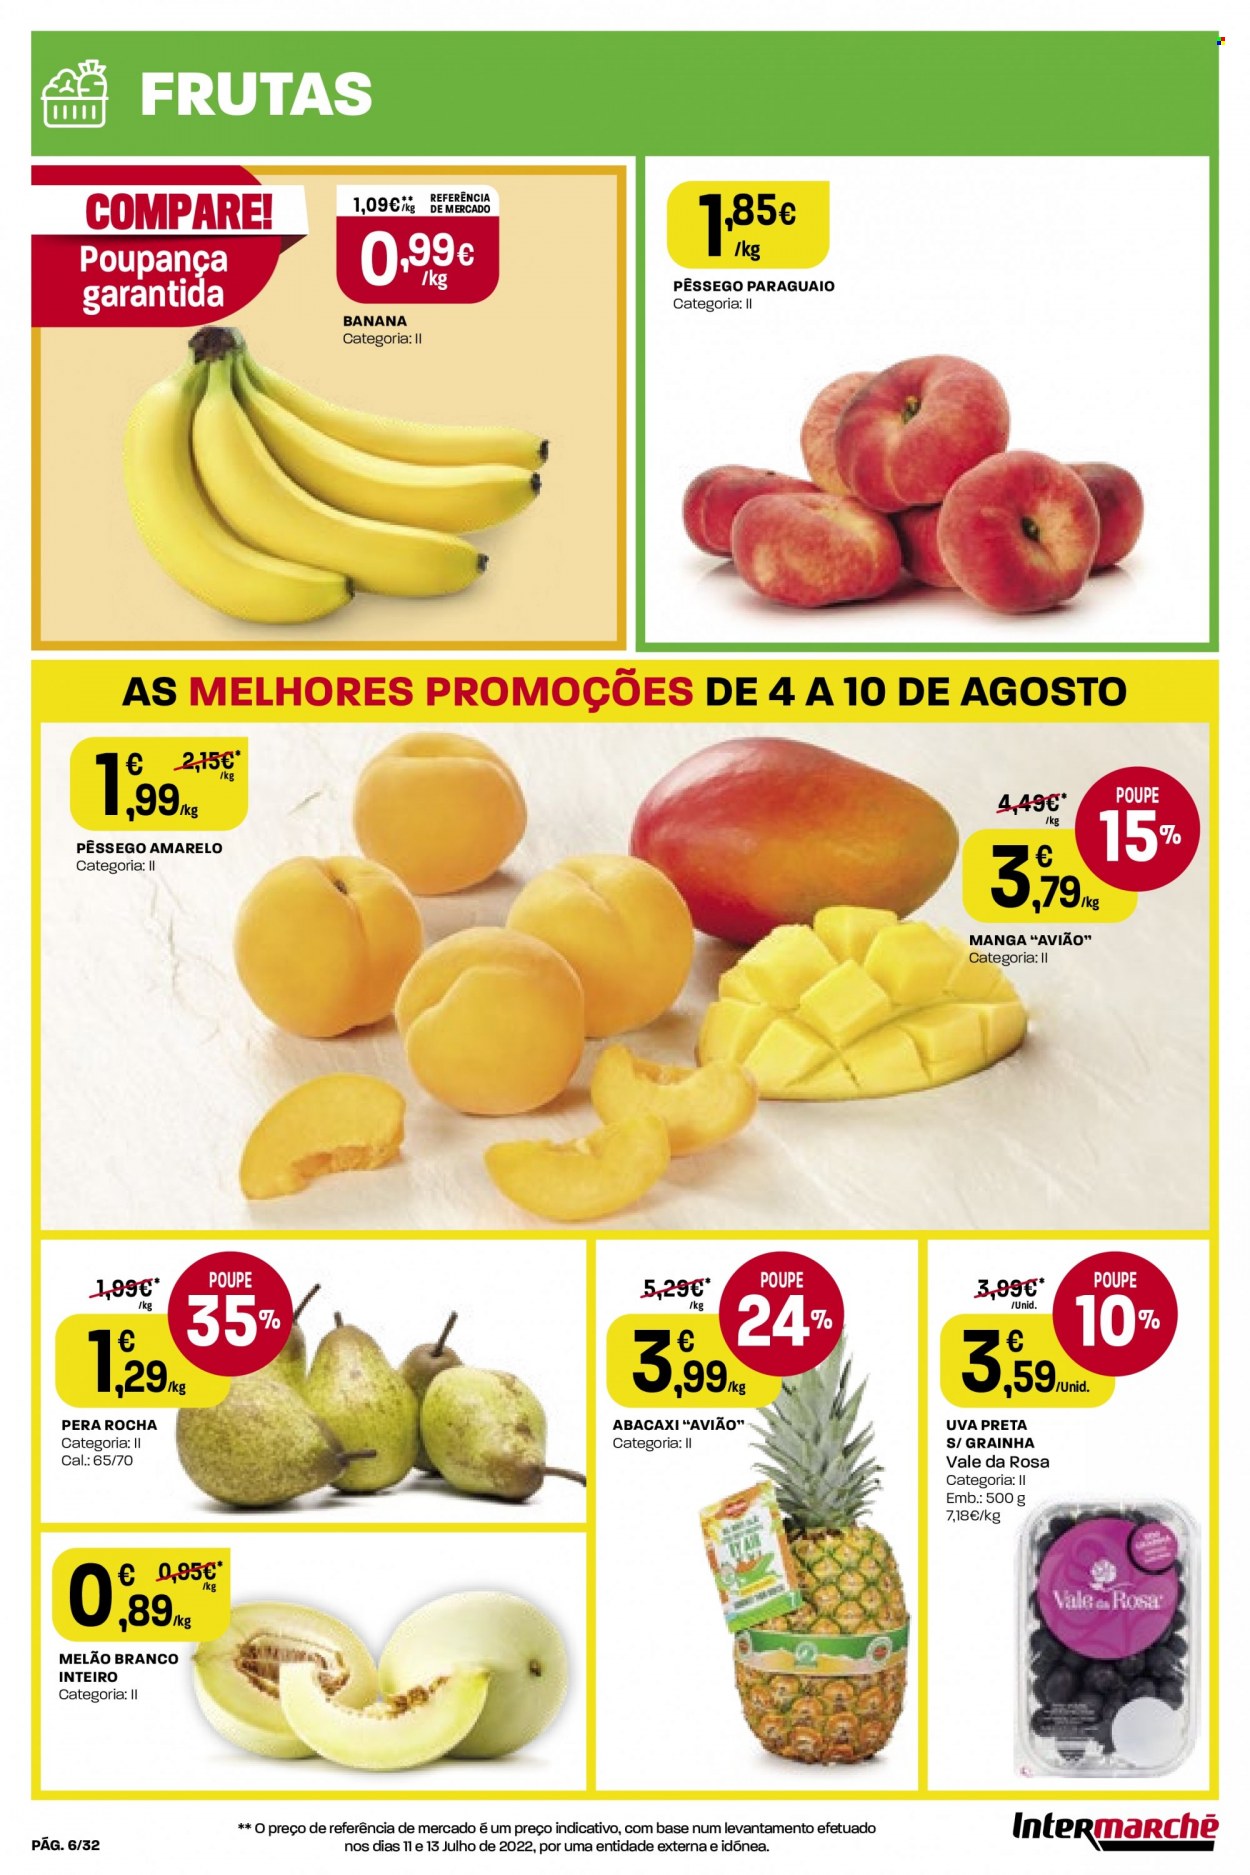 thumbnail - Folheto Intermarché - 4.8.2022 - 10.8.2022 - Produtos em promoção - banana, pera, abacaxi, melão, uva, pêssego, uva preta, manga, melão branco. Página 6.